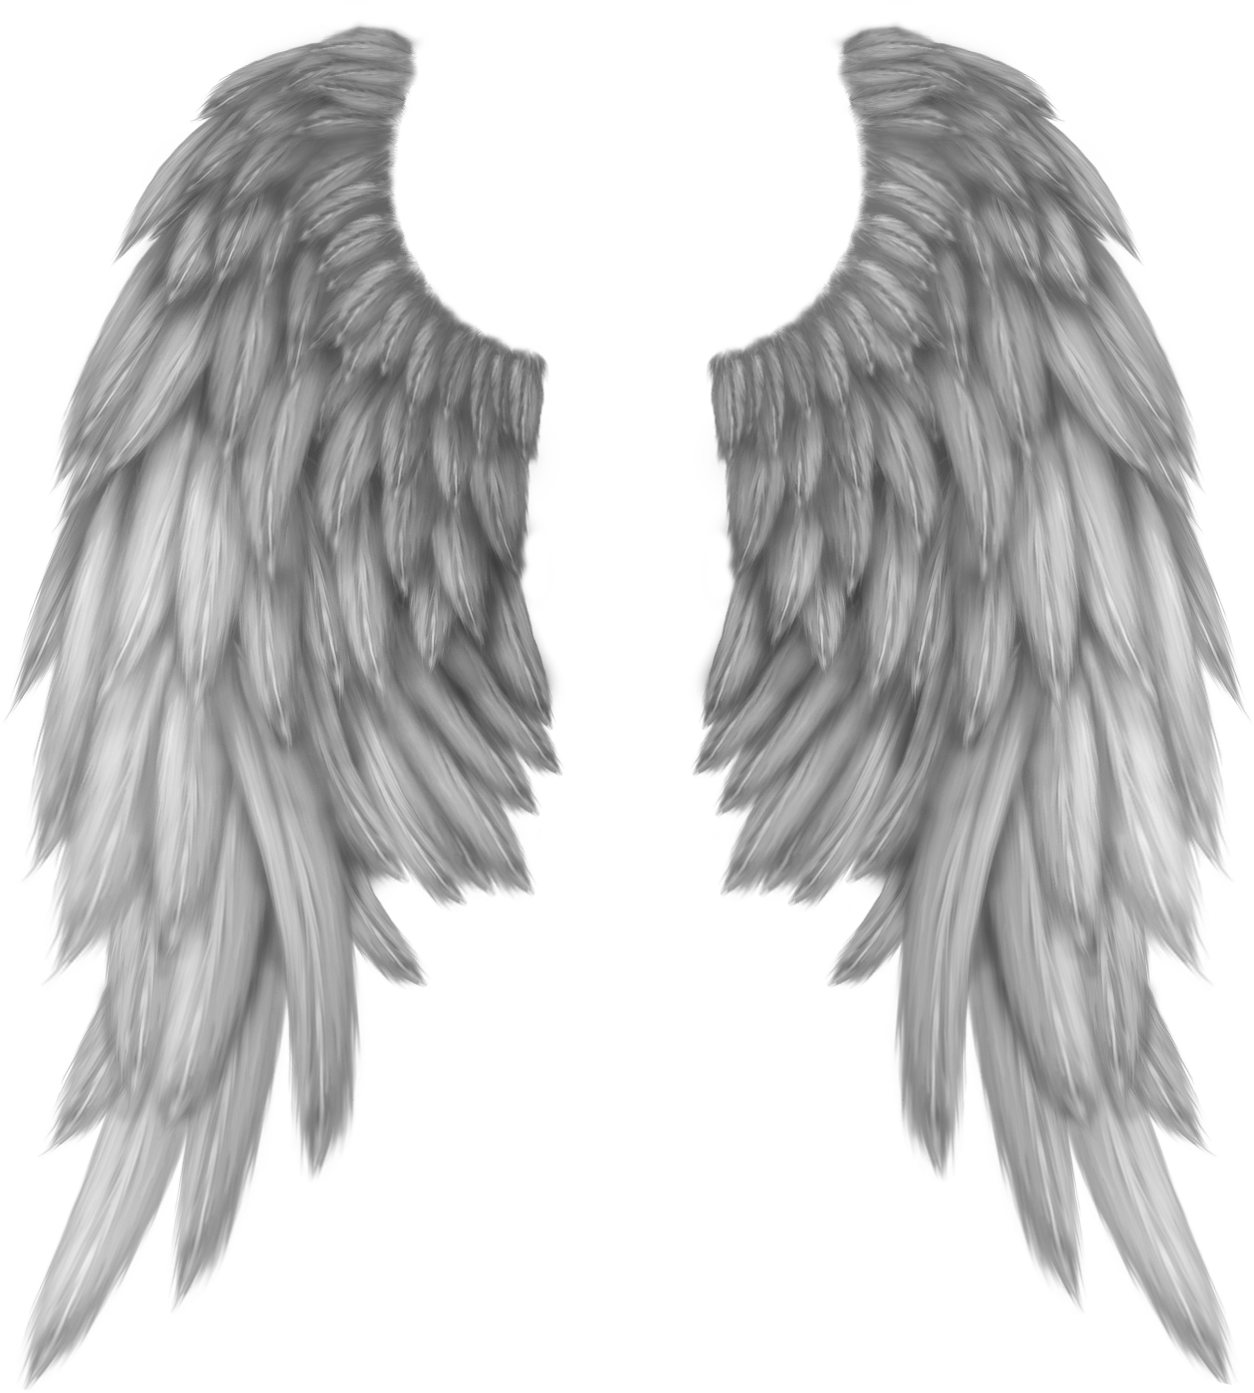 wings freetoedit #wings #freetoedit sticker by @janiceag.